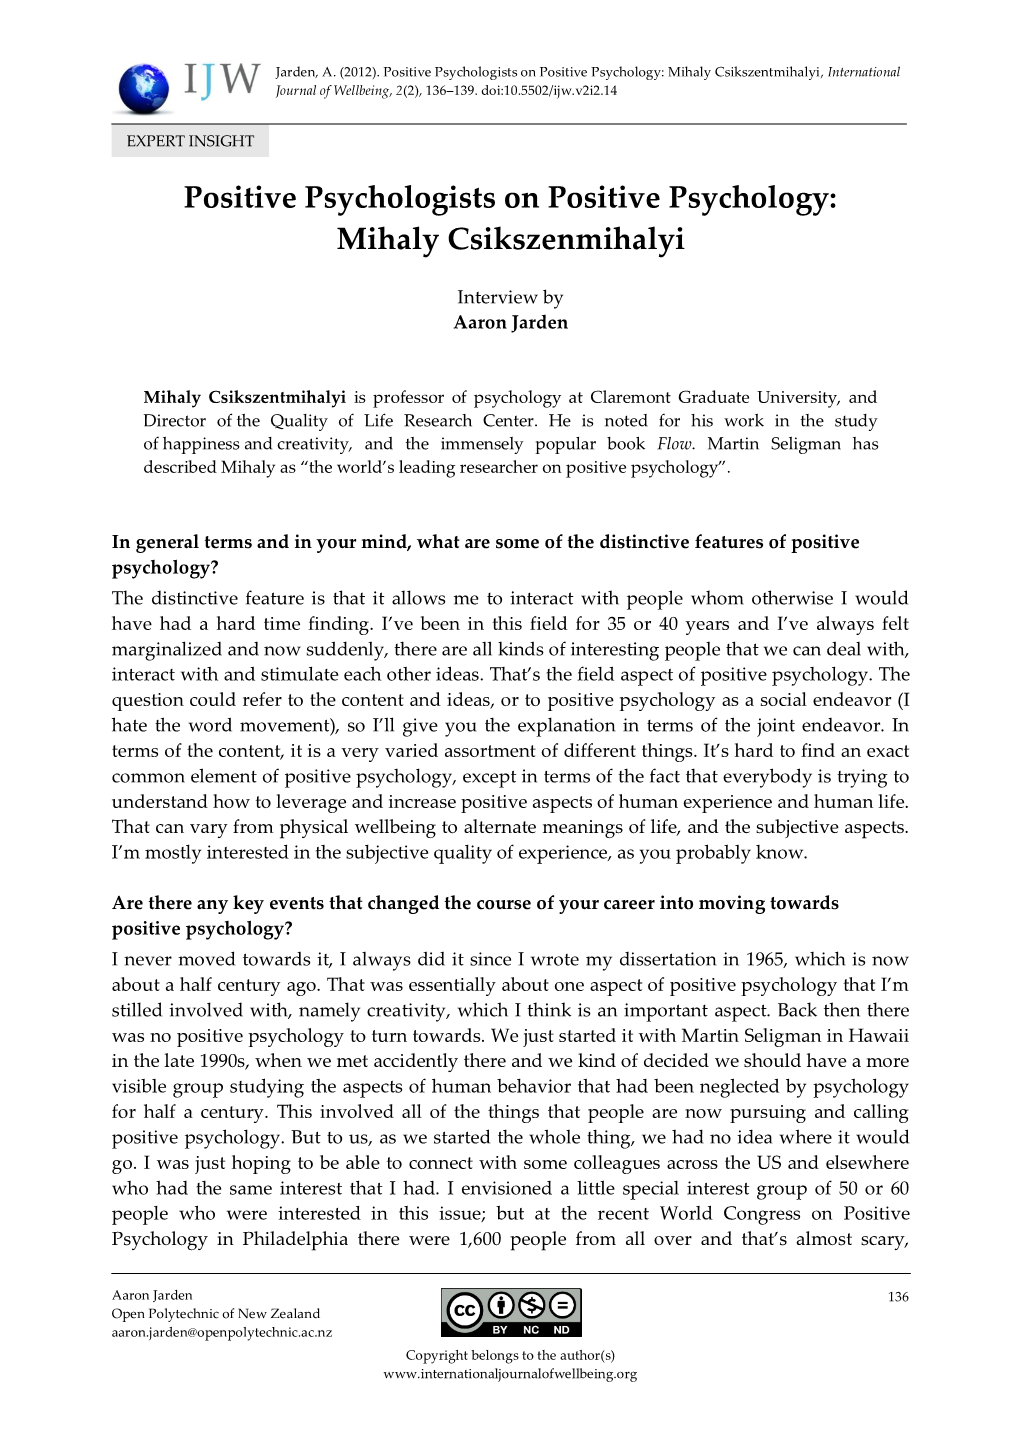 Positive Psychologists on Positive Psychology: Mihaly Csikszenmihalyi